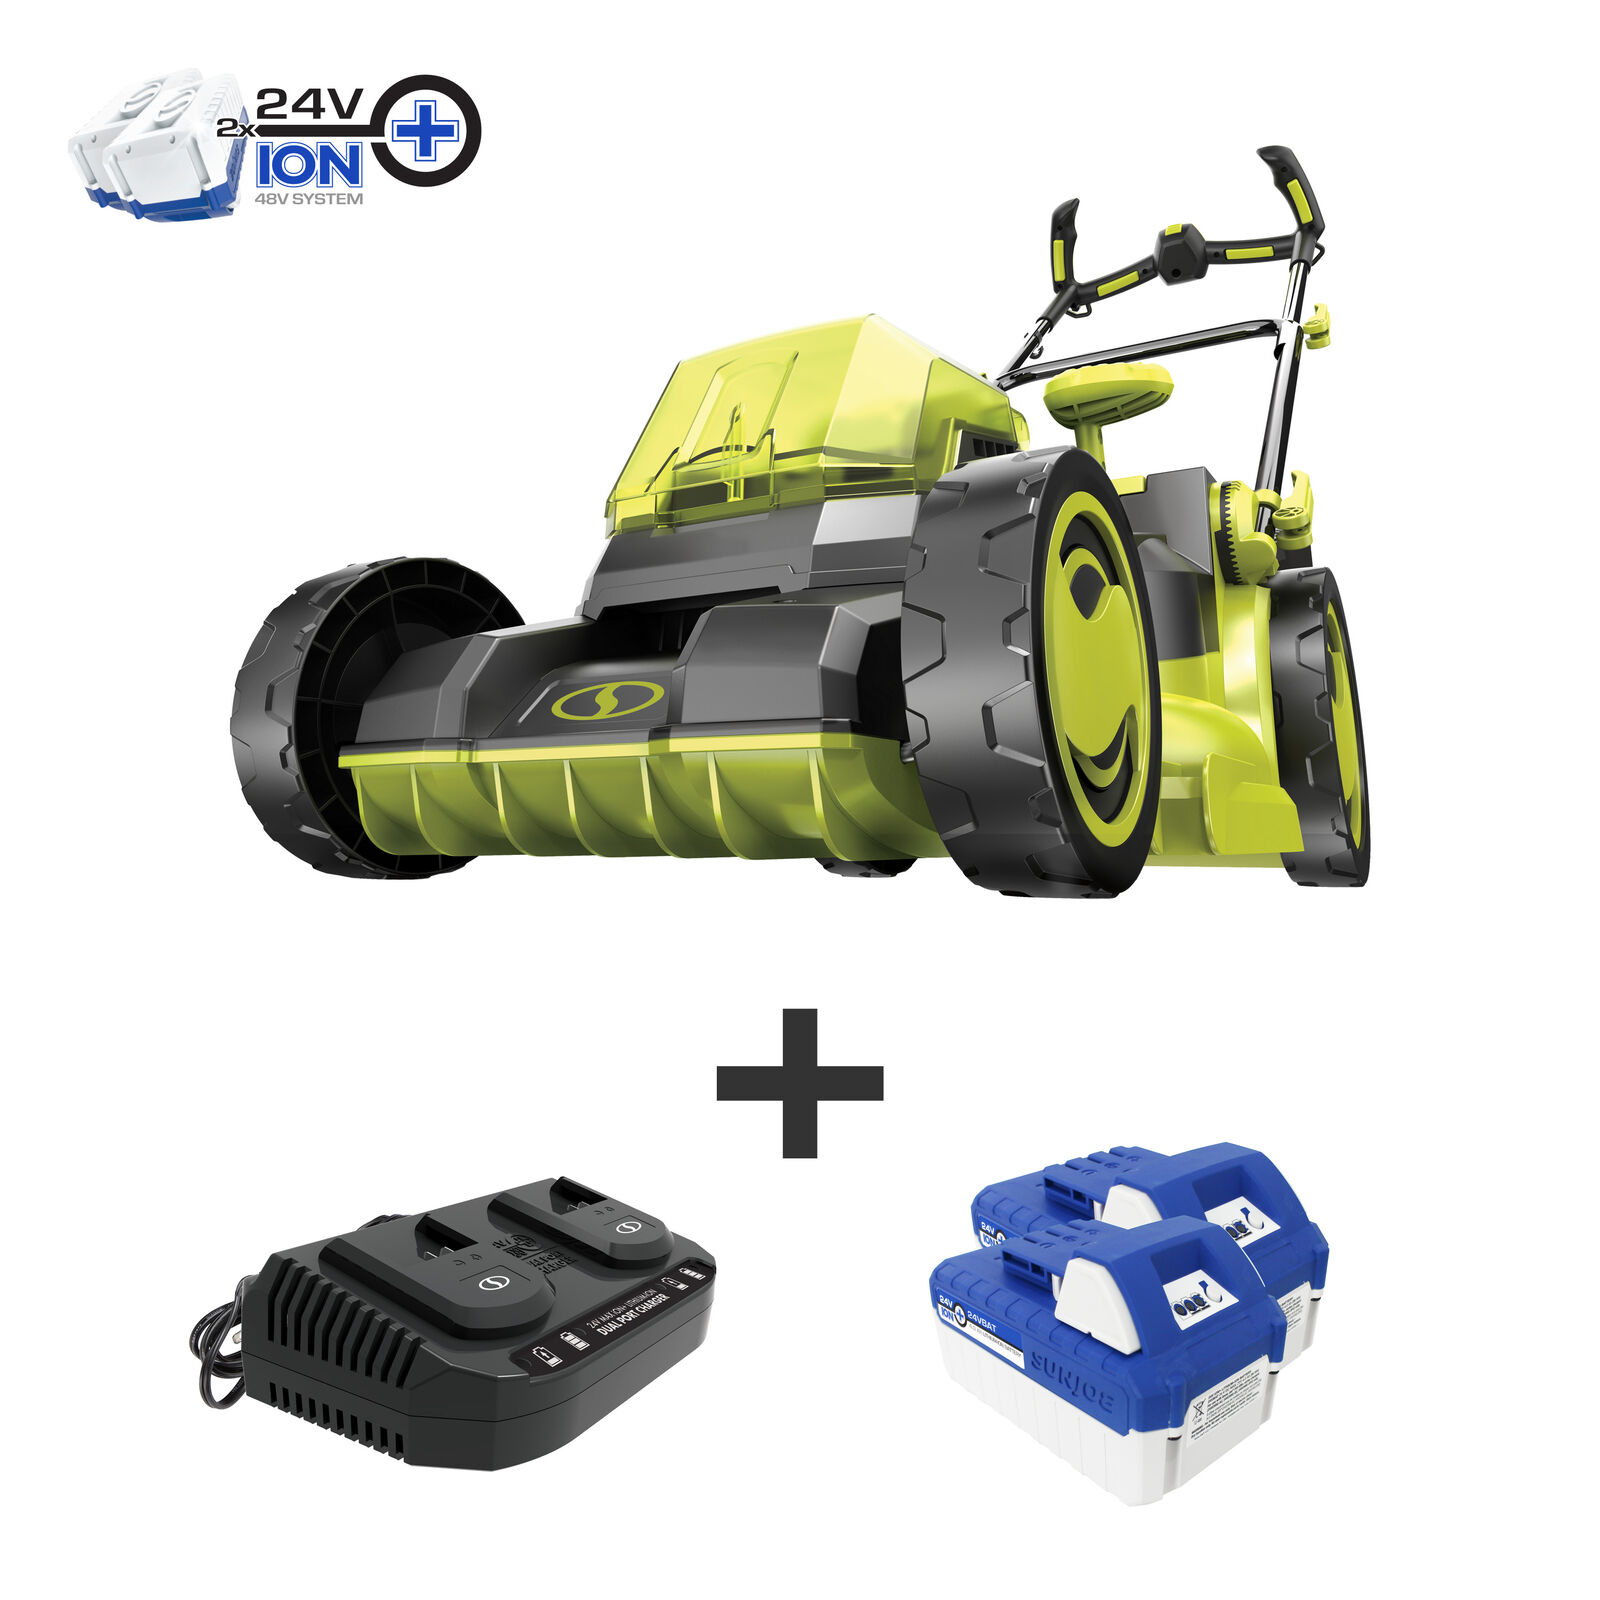 Sun Joe 24v-x2-16lm 48-volt Ion+ Cordless Brushless Lawn Mower Kit |